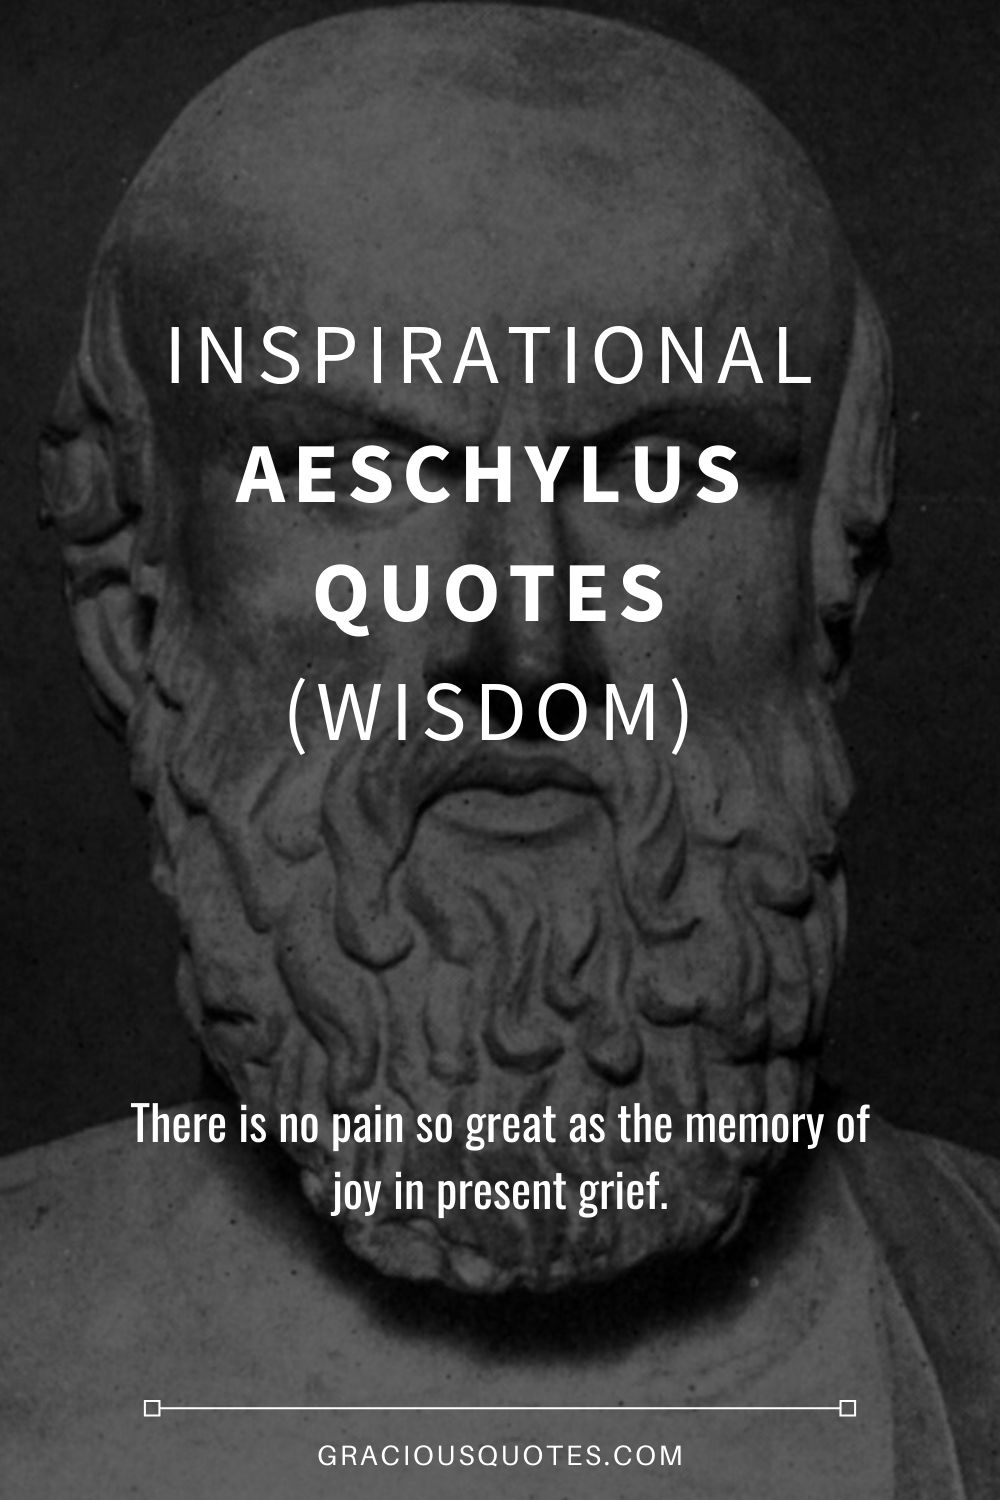 Inspirational Aeschylus Quotes (WISDOM) - Gracious Quotes